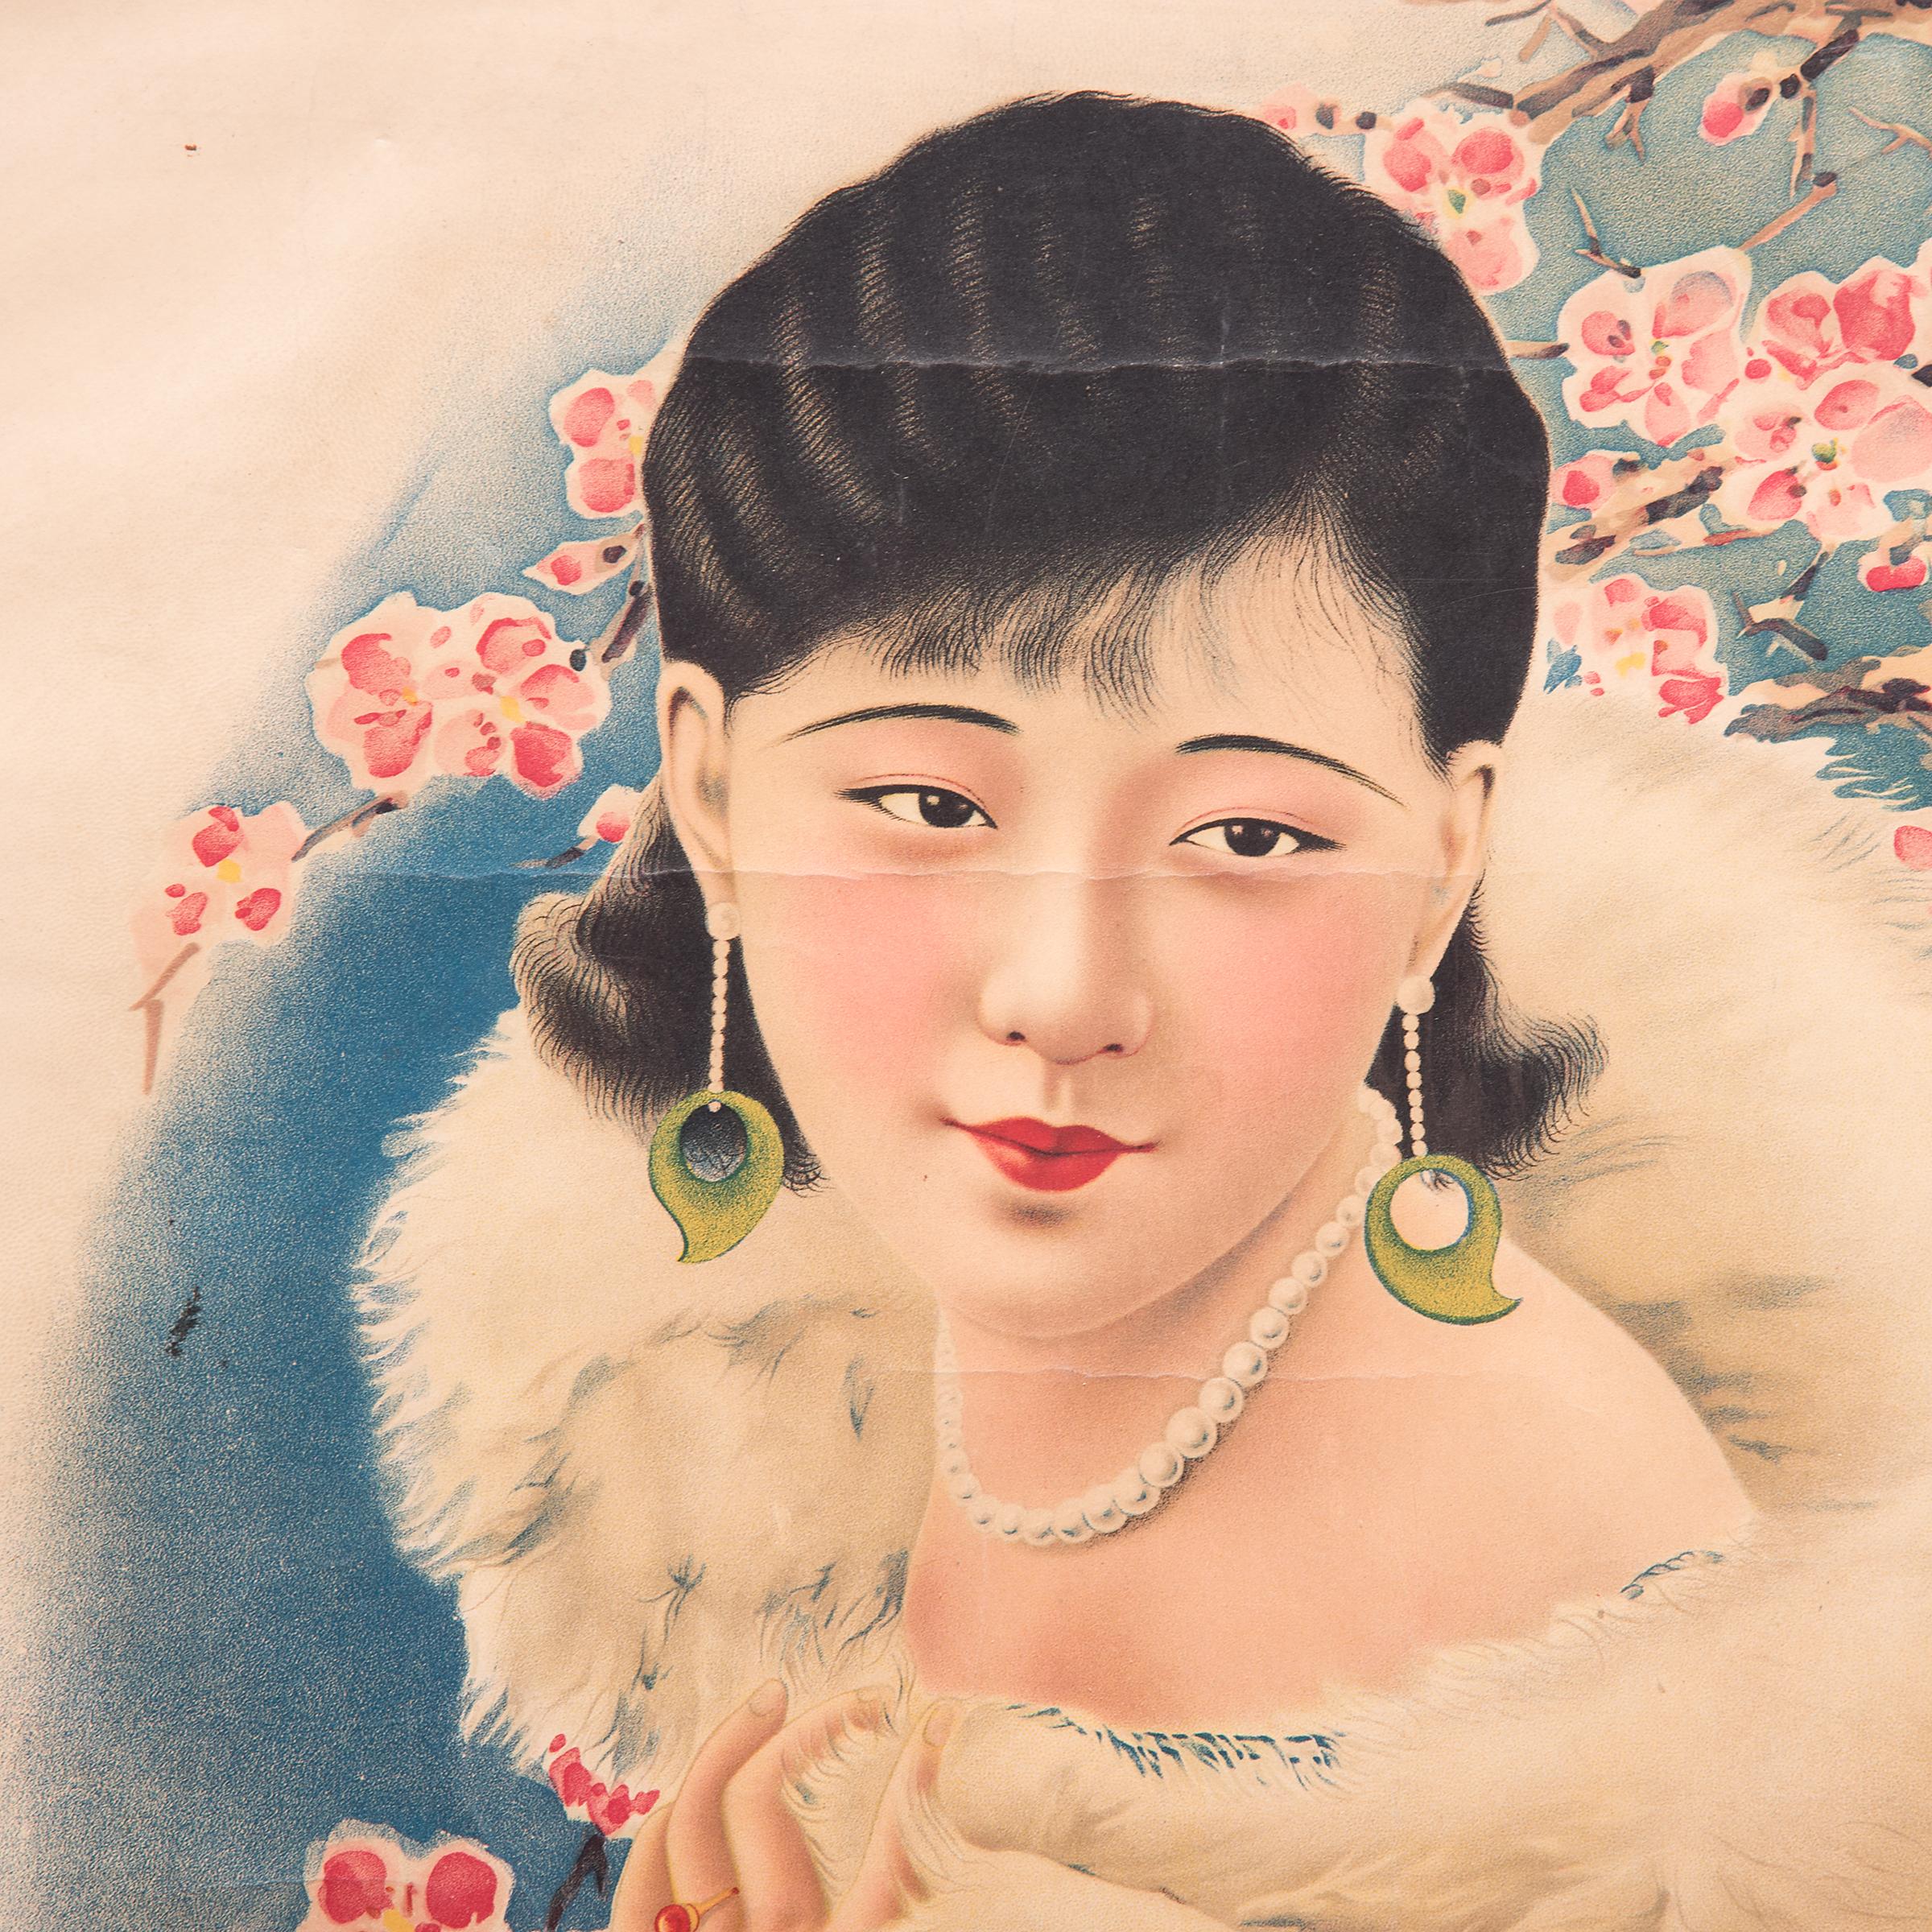 Affiche publicitaire chinoise vintage, vers 1930 - Print de Unknown